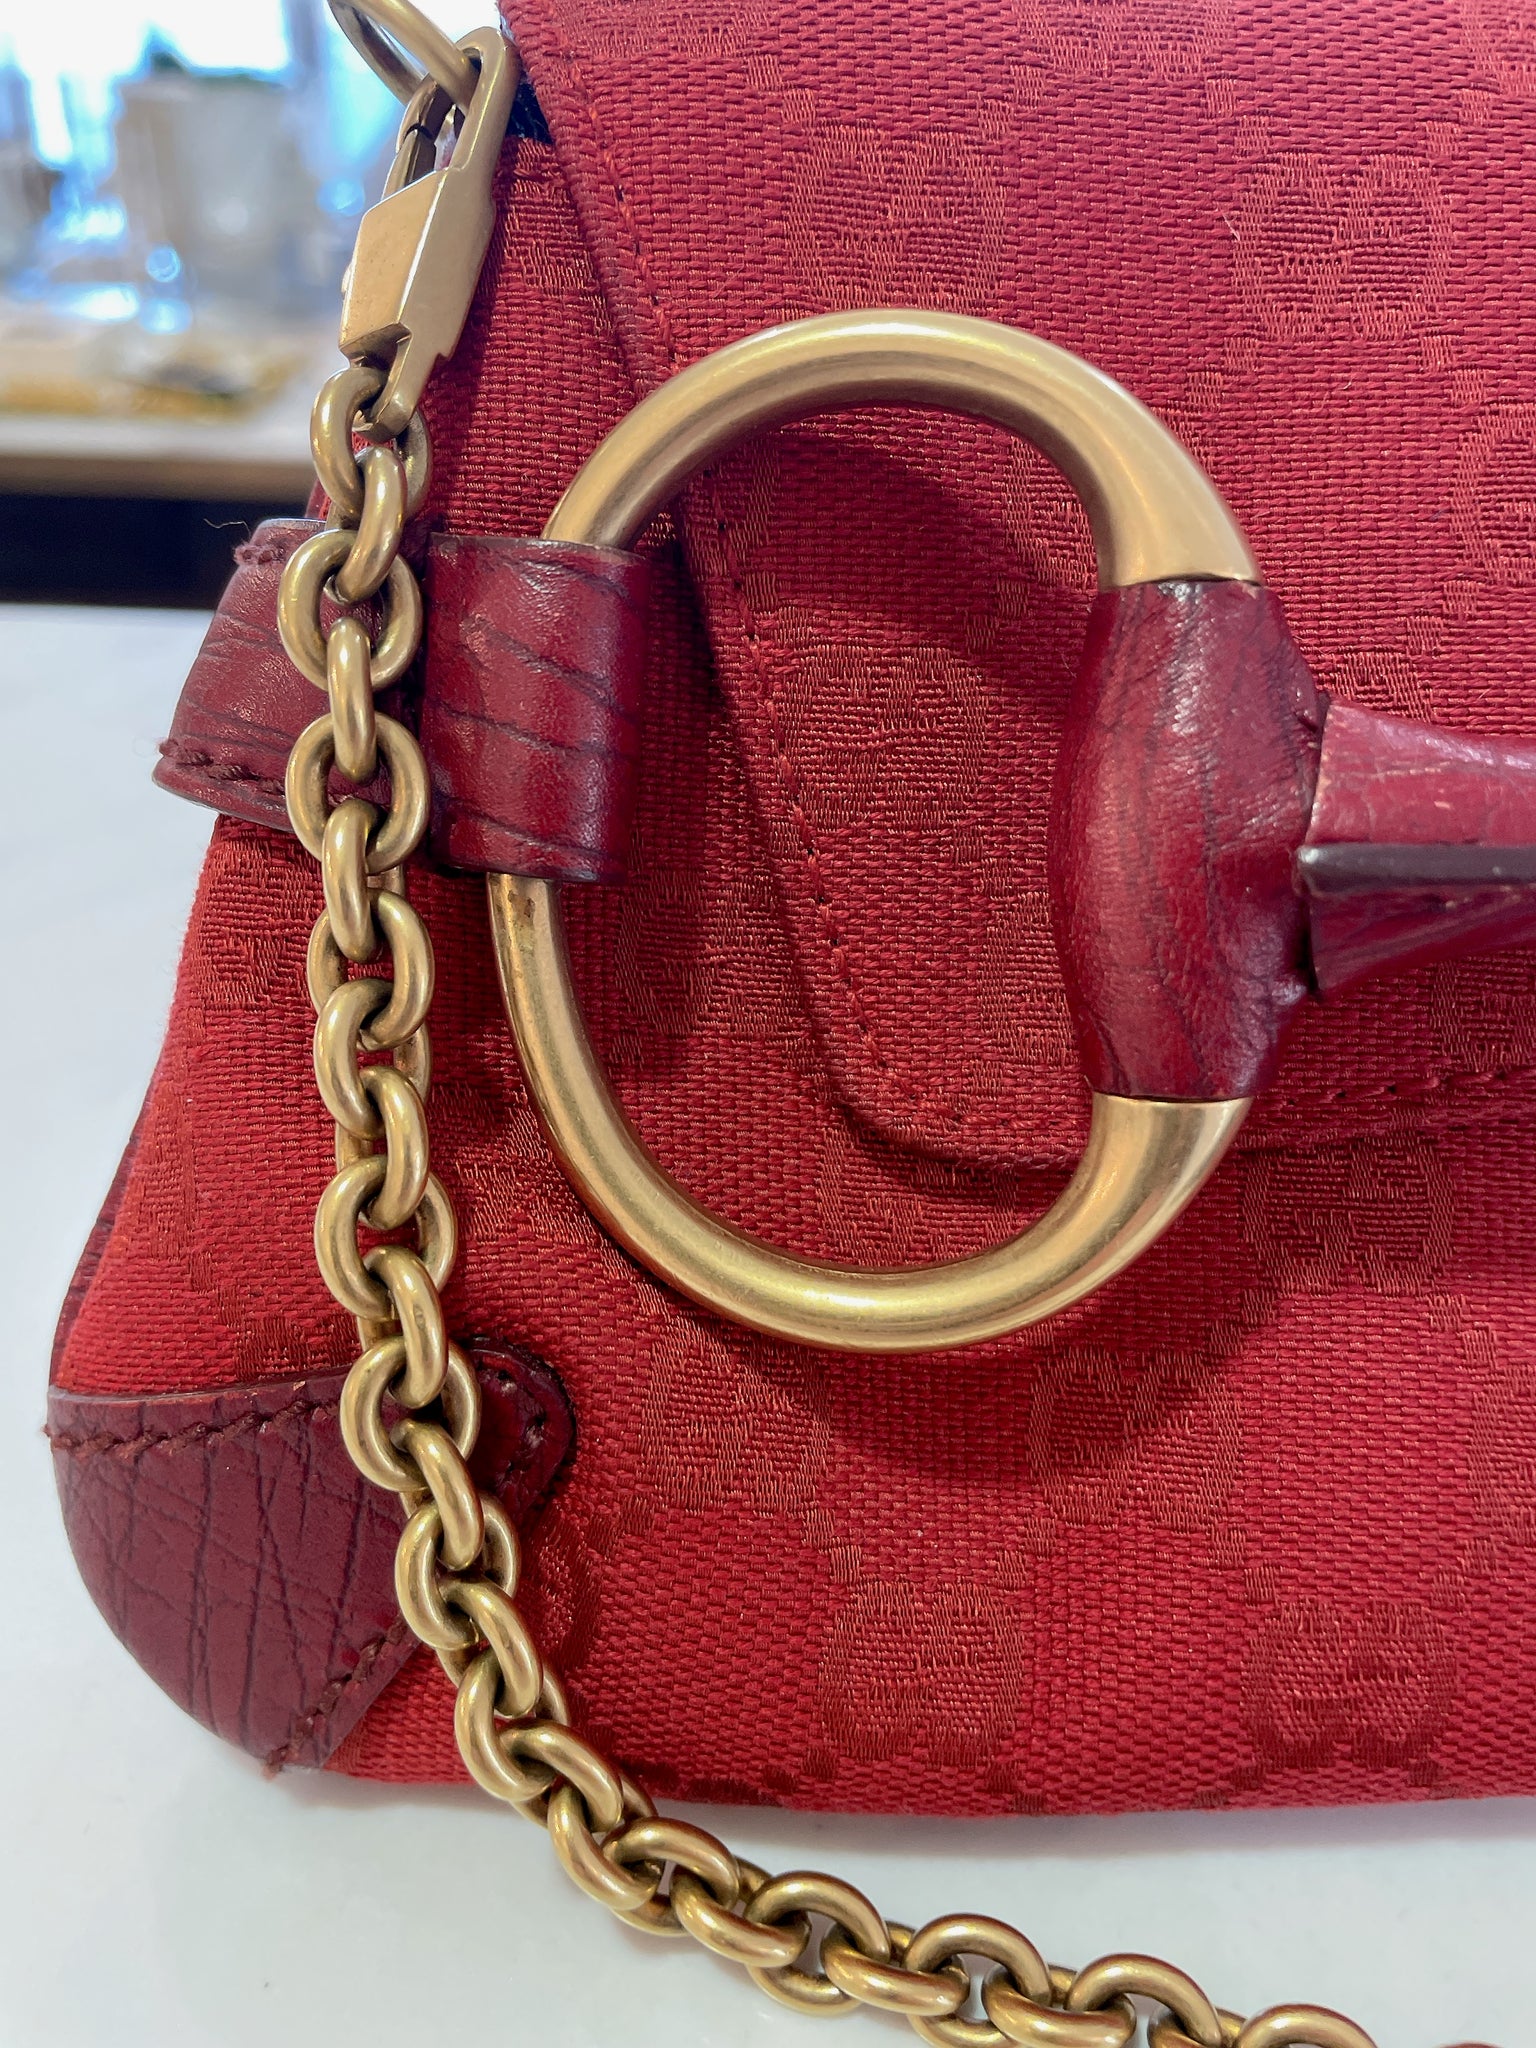 Gucci Horsebit Chain Strap Clutch